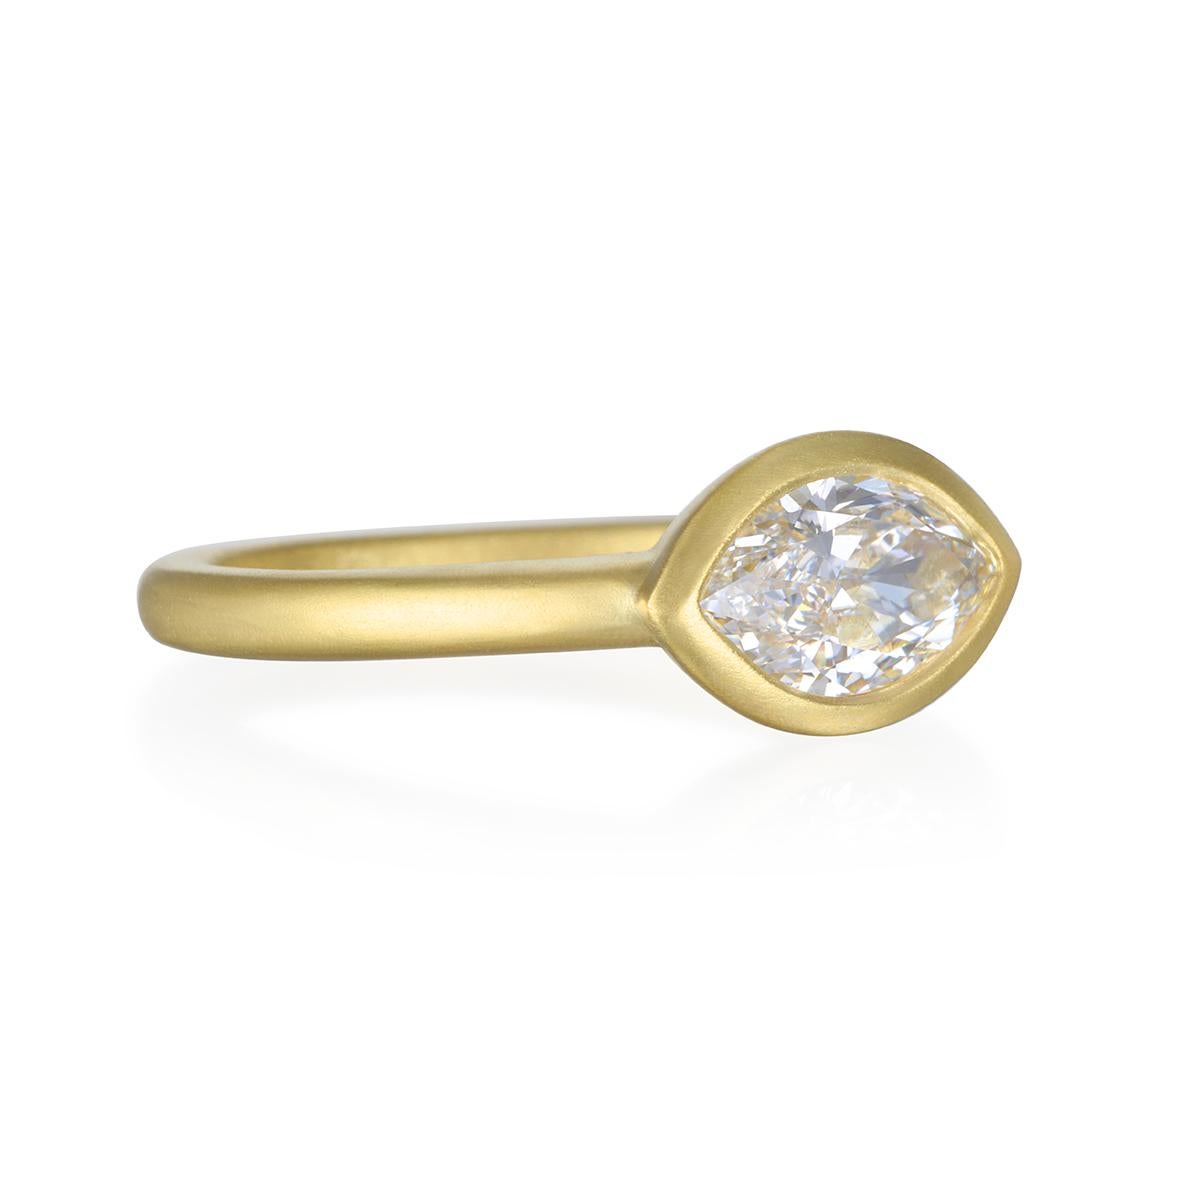 Dieser moderne Diamantring im Marquise-Schliff ist ein echter Hingucker. Perfekt zum Stapeln oder für die moderne Braut.  Bringen Sie Ihre Individualität mit einem originellen Design zum Ausdruck  
handgefertigt aus 18 Karat Gold mit einer